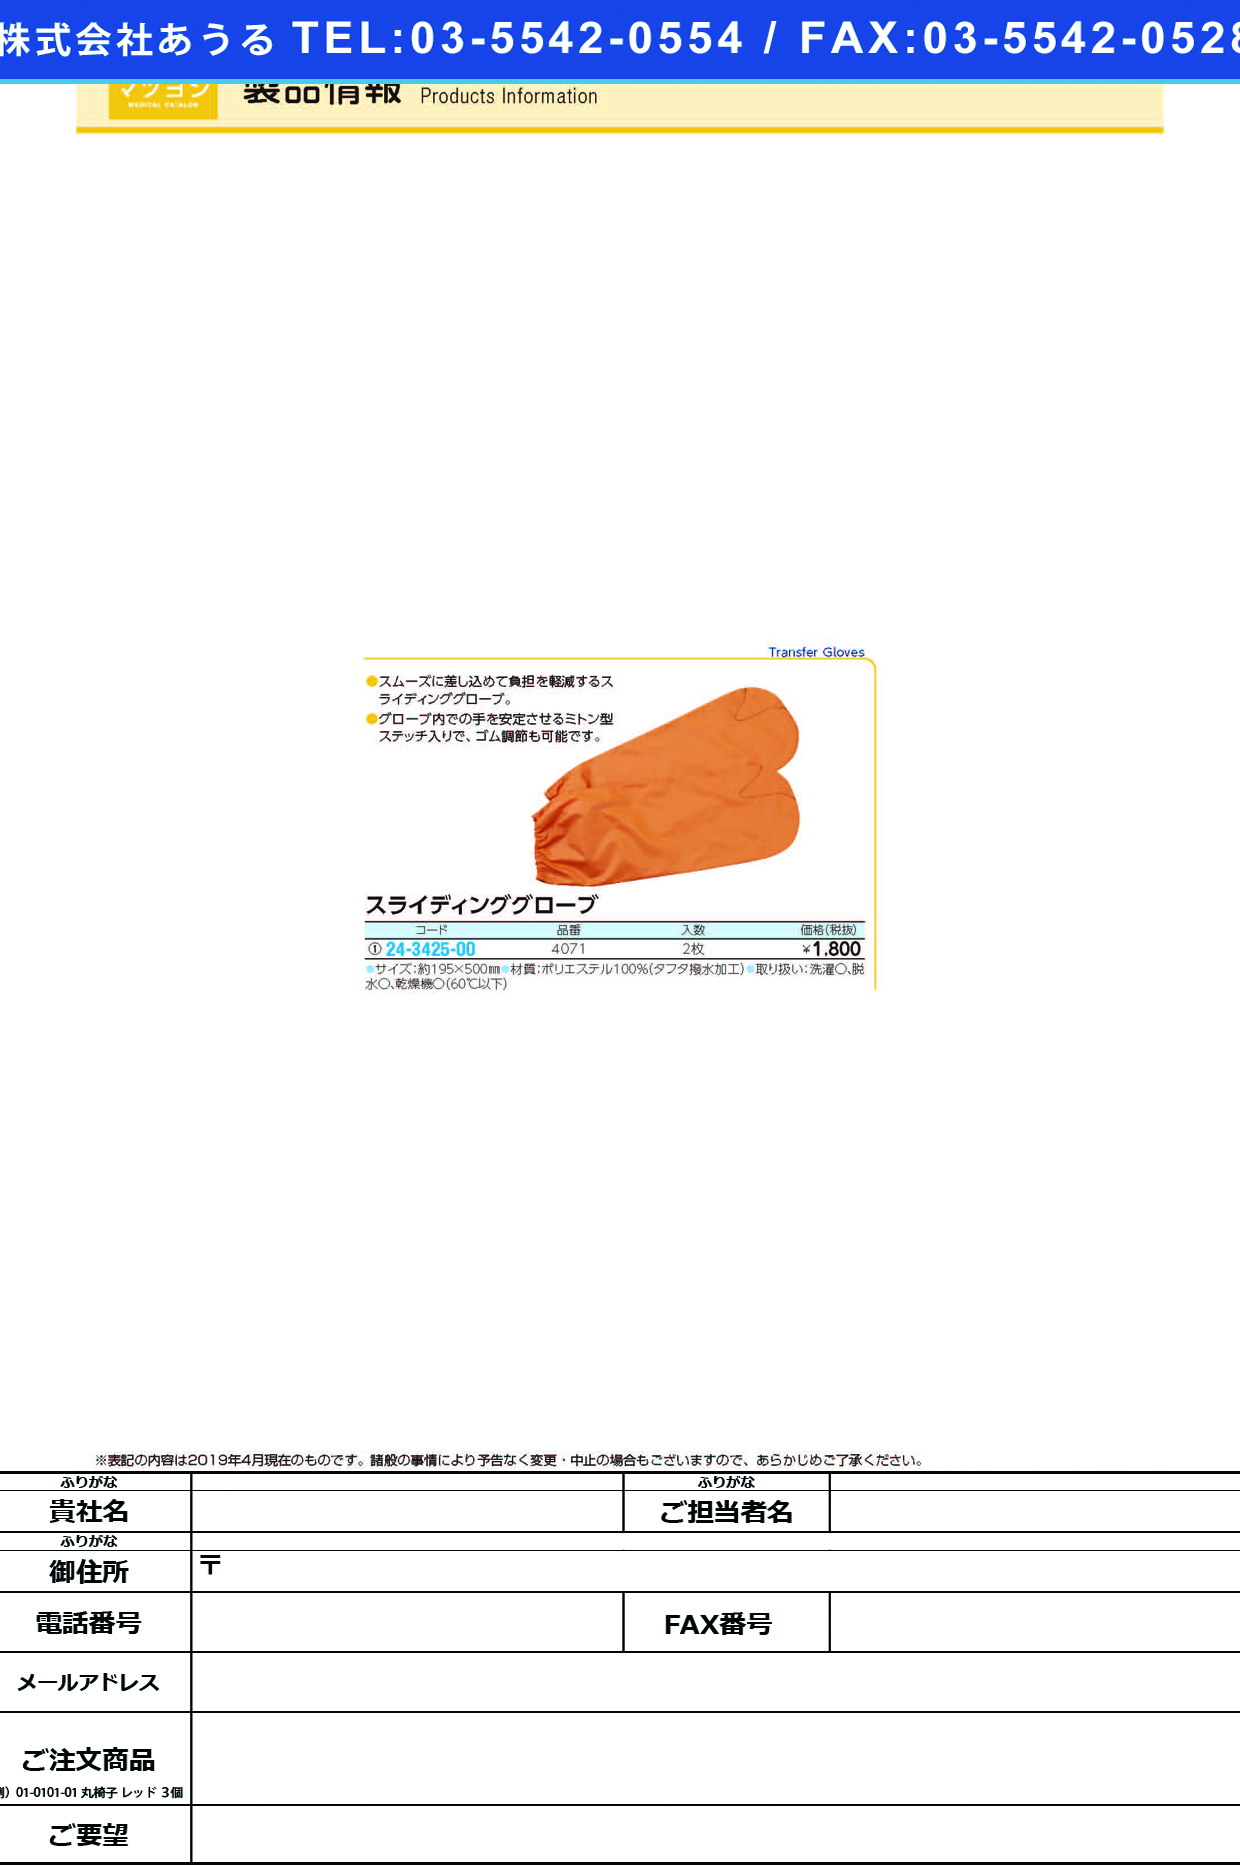 (24-3425-00)スライディンググローブ 4071(2ﾏｲｲﾘ) ｽﾗｲﾃﾞｨﾝｸﾞｸﾞR-ﾌﾞ(日本エンゼル)【1個単位】【2019年カタログ商品】